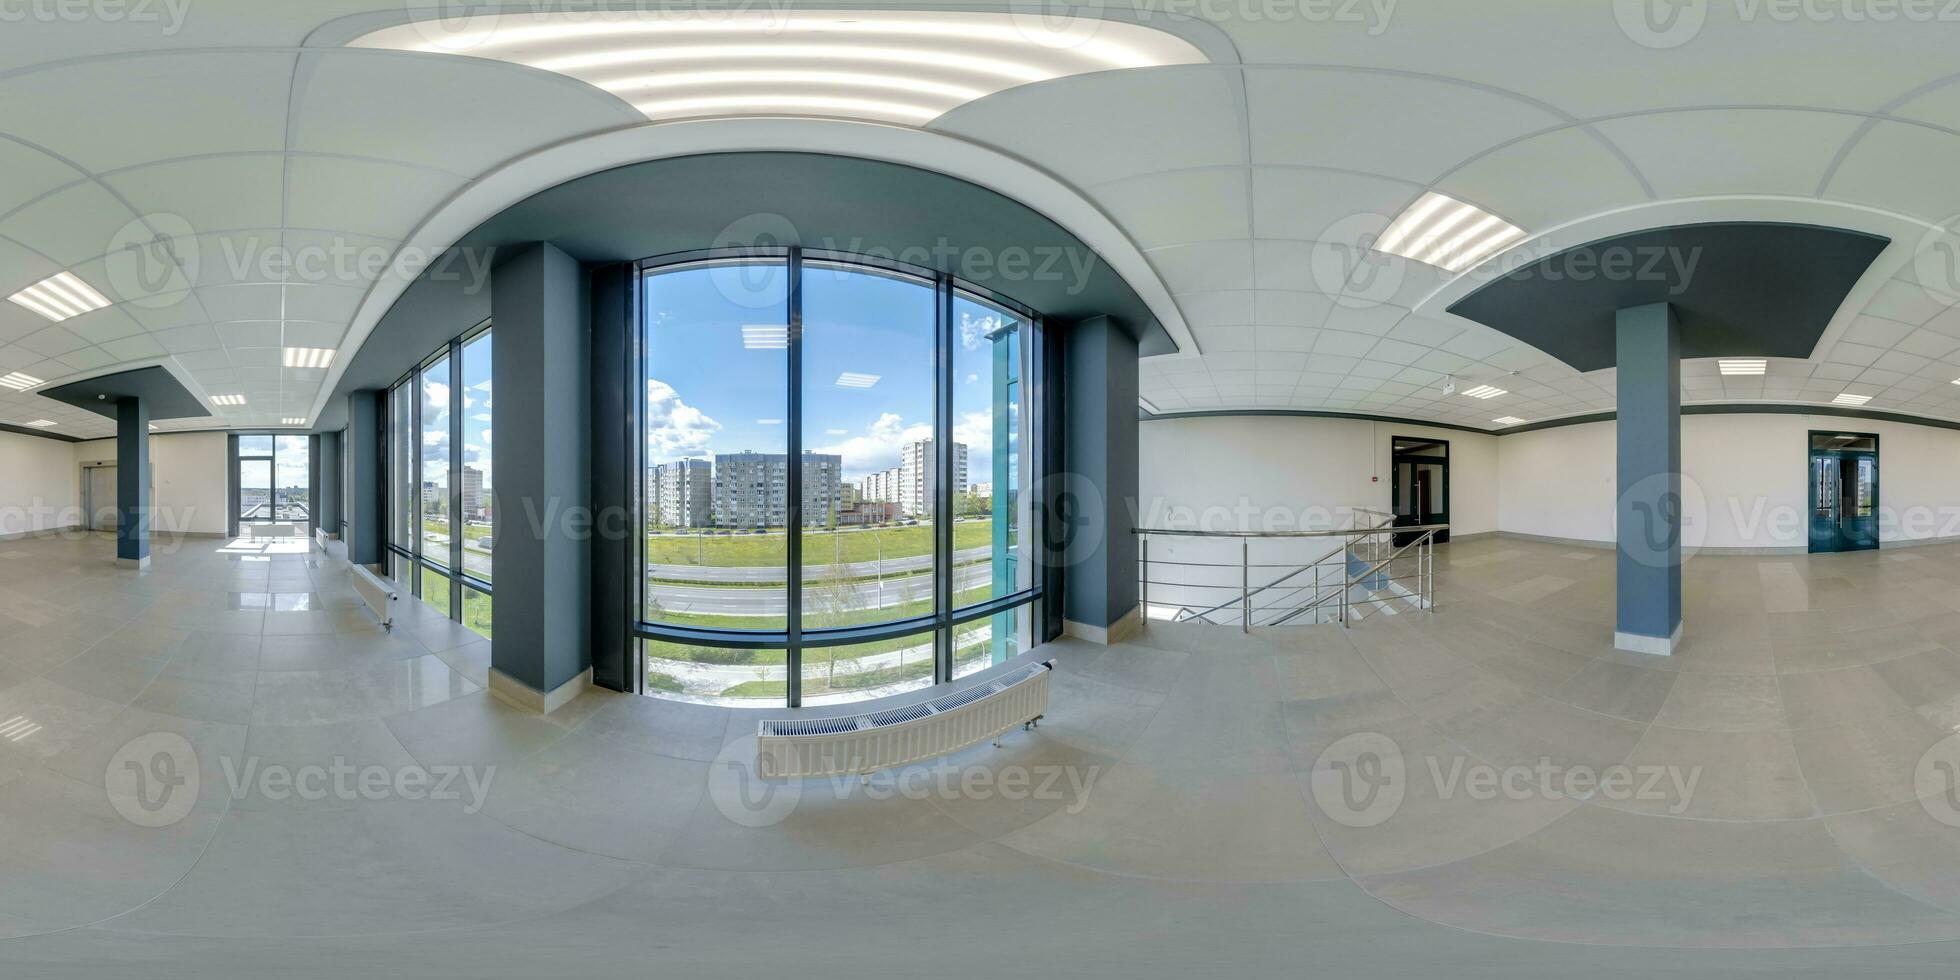 full sömlös sfärisk hdri 360 panorama se i tömma modern hall med kolumner, dörrar och panorama- fönster i likriktad utsprång, redo för ar vr innehåll foto